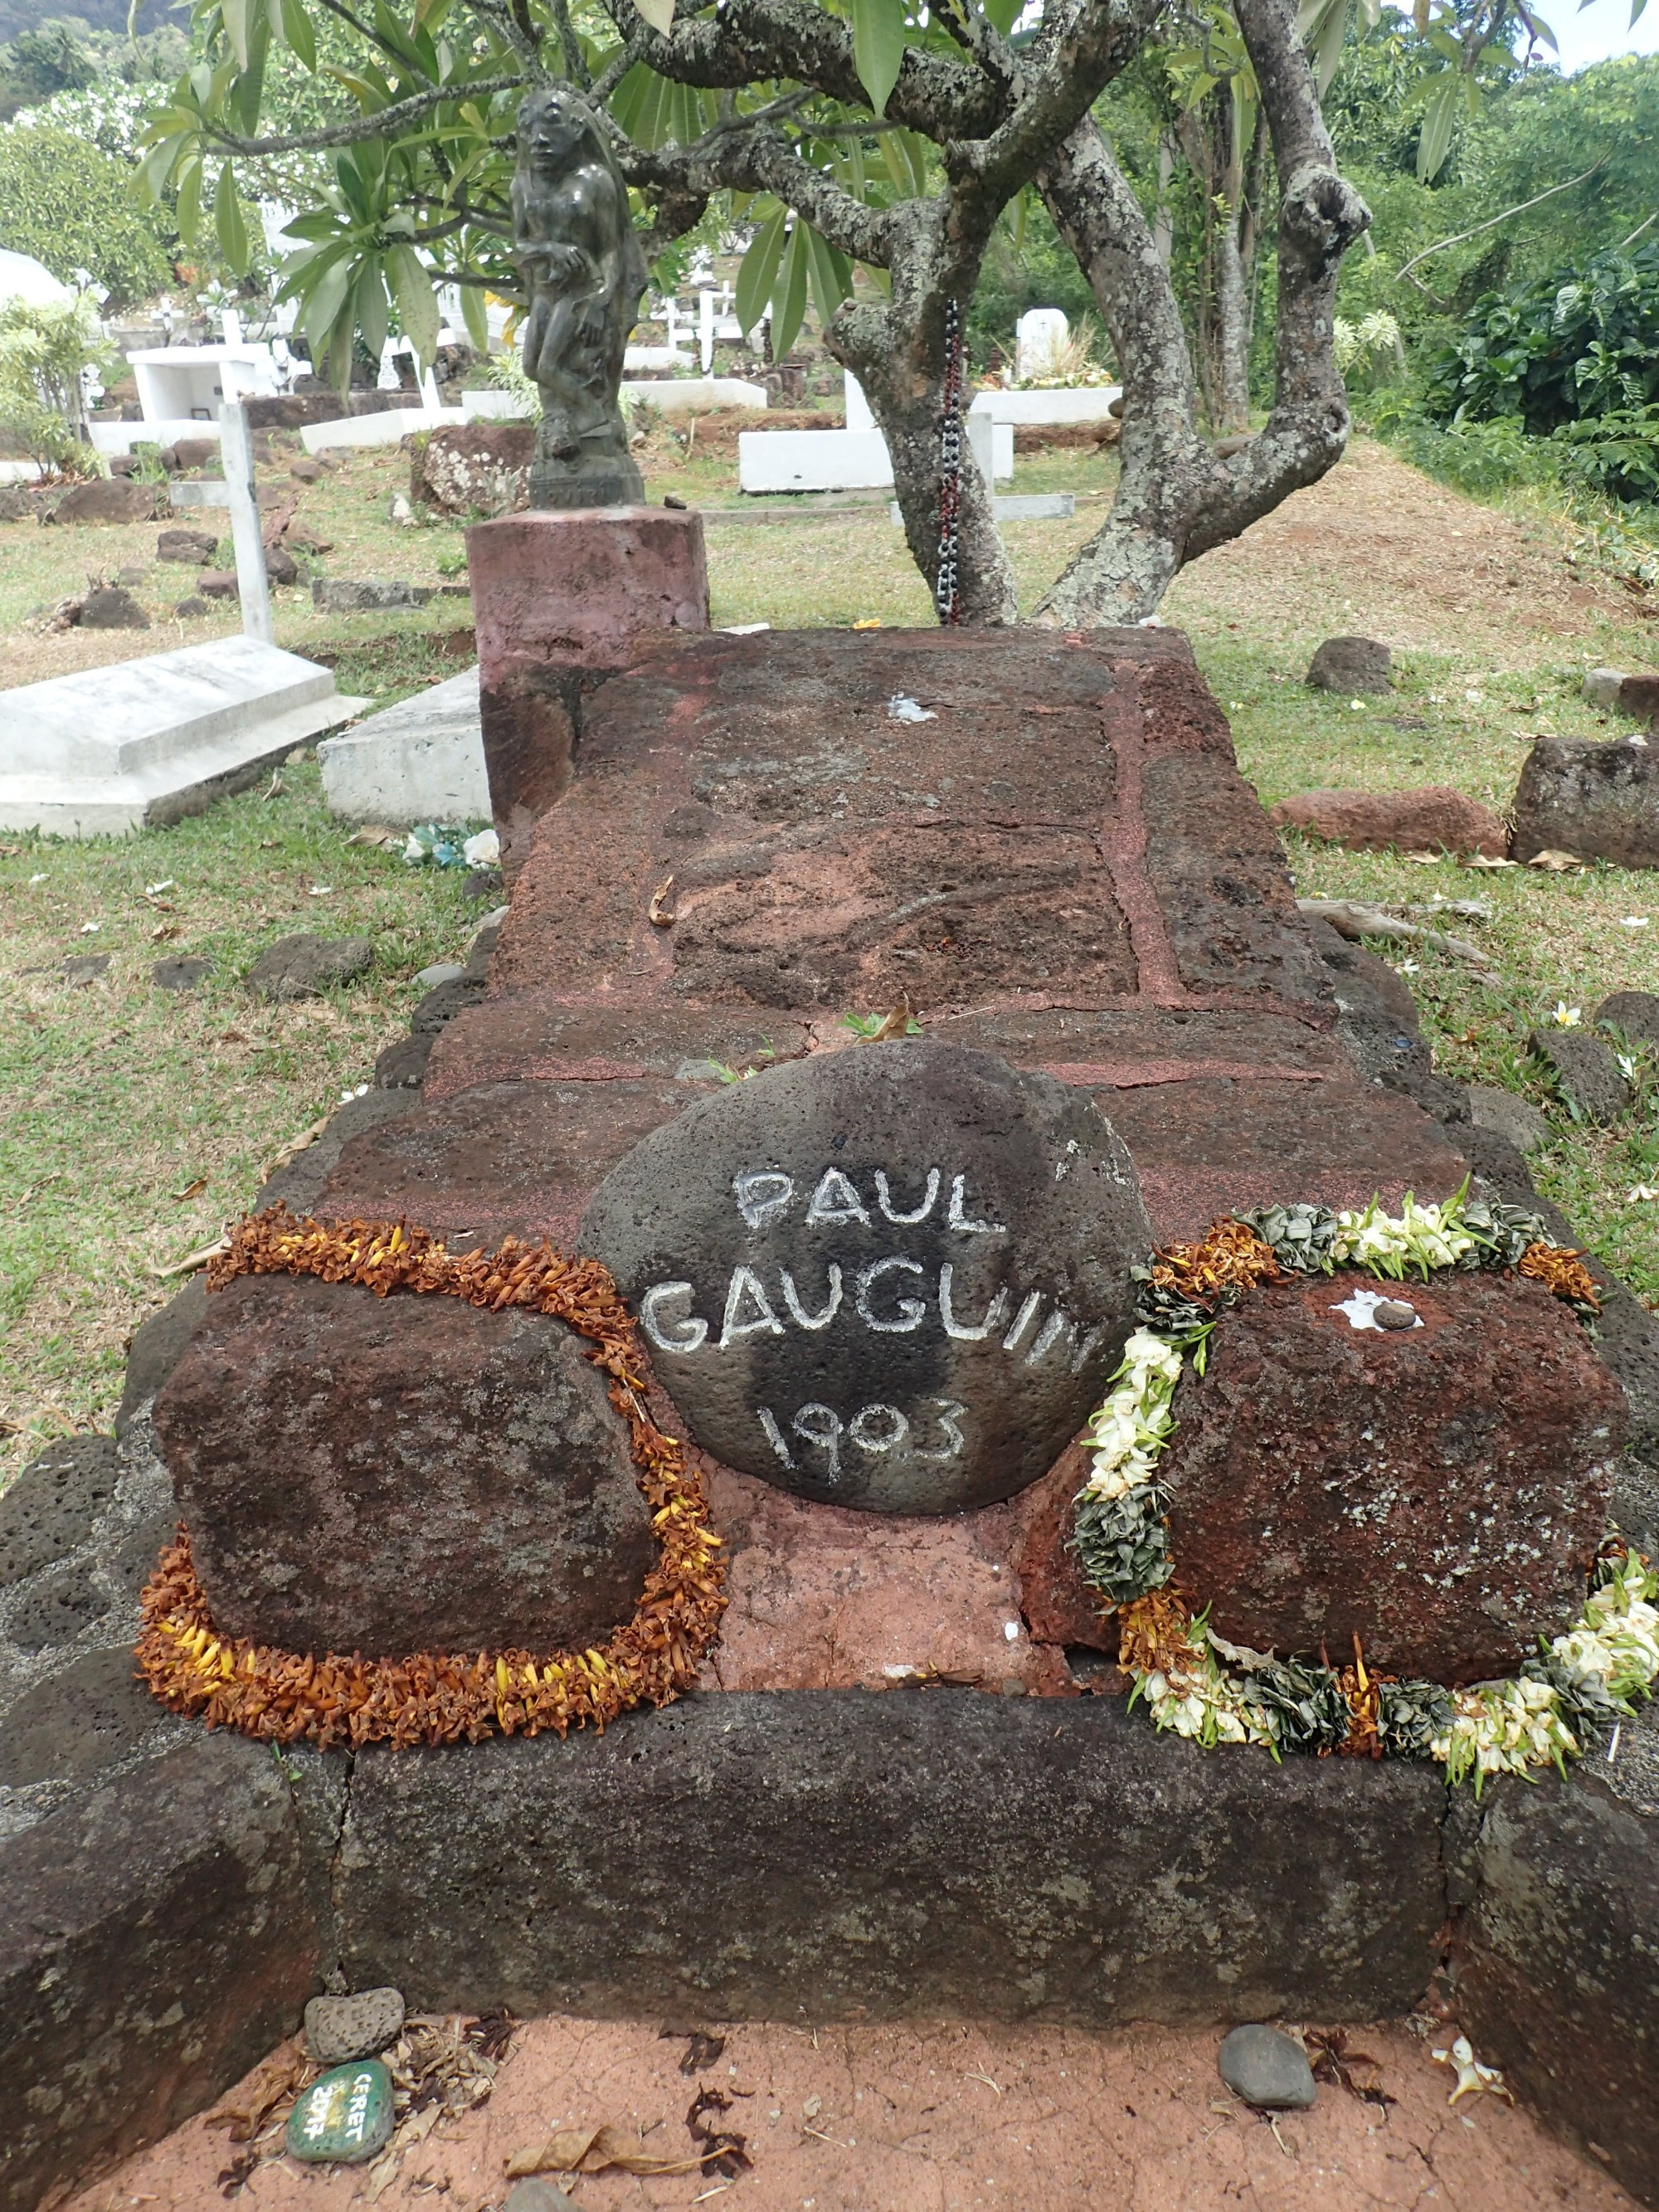 Gauguin Tomb, Французская Полинезия